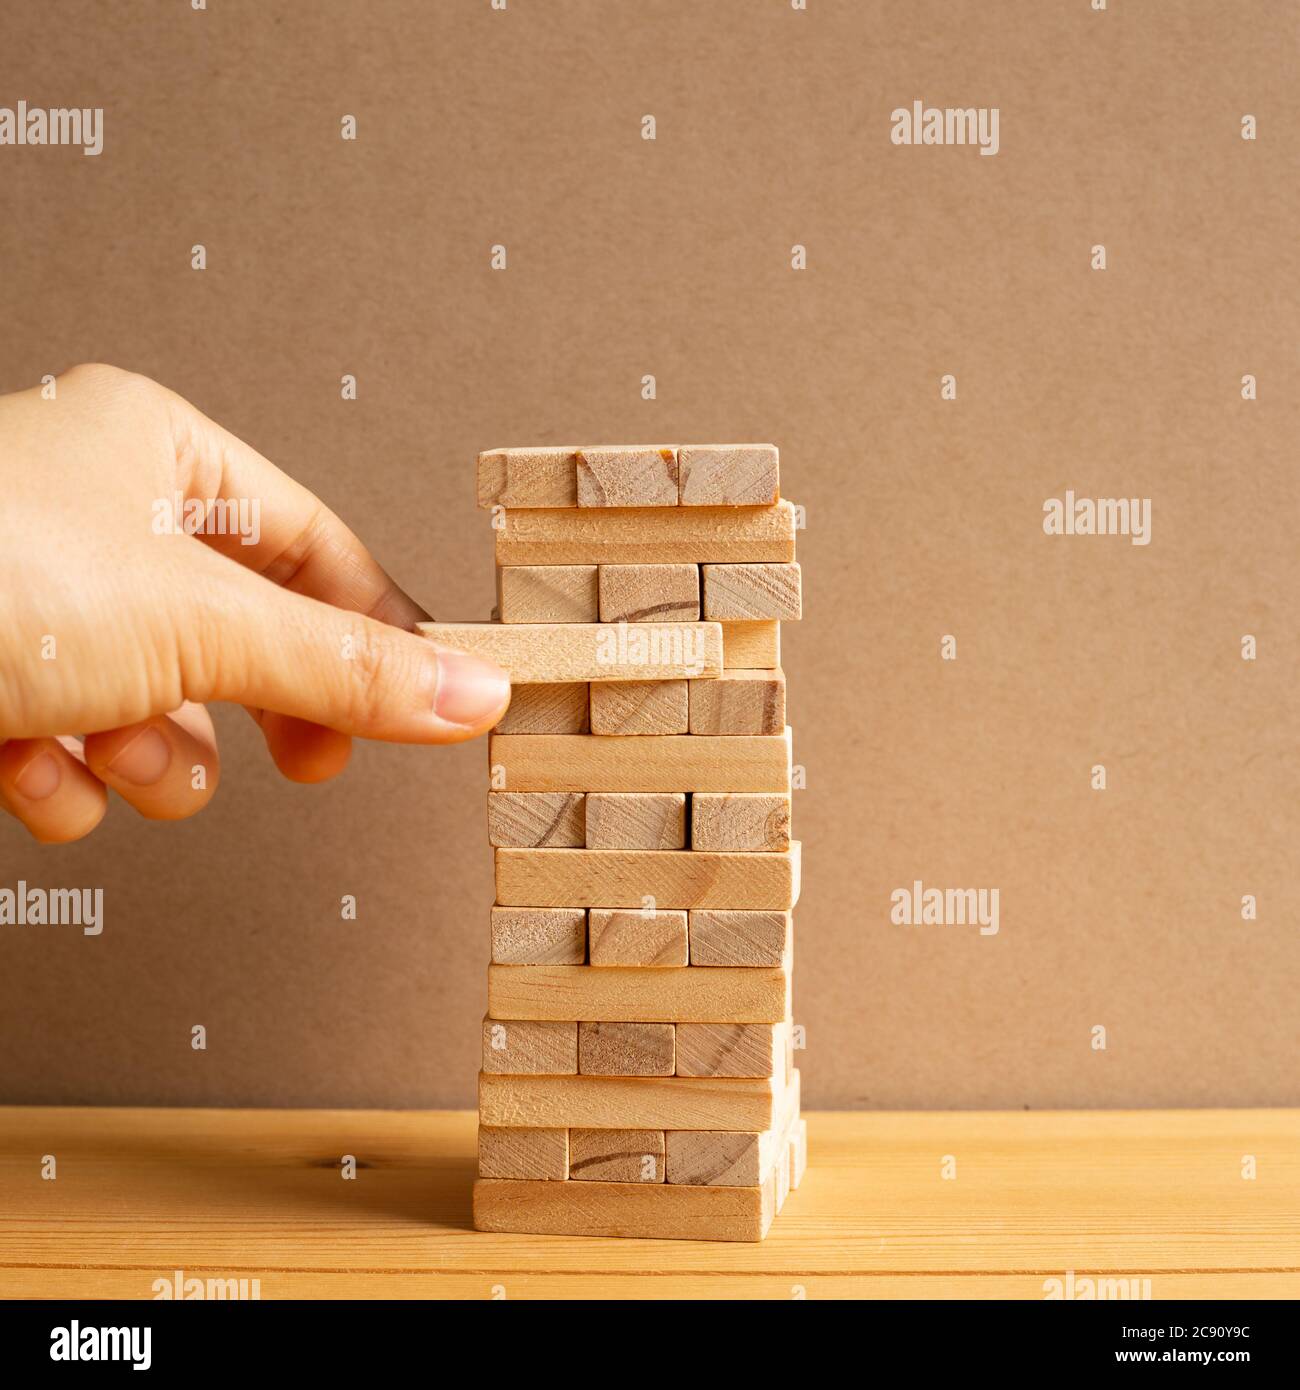 Tháp xếp khối gỗ Jenga: Sự kết hợp hoàn hảo giữa nghệ thuật và khéo tay khi bạn xây dựng một tòa tháp đẹp mắt từ những khối gỗ Jenga. Rất thú vị khi tìm kiếm cách để không làm đổ cả tòa tháp. Hãy thử và bạn sẽ nhận thấy điều đó.